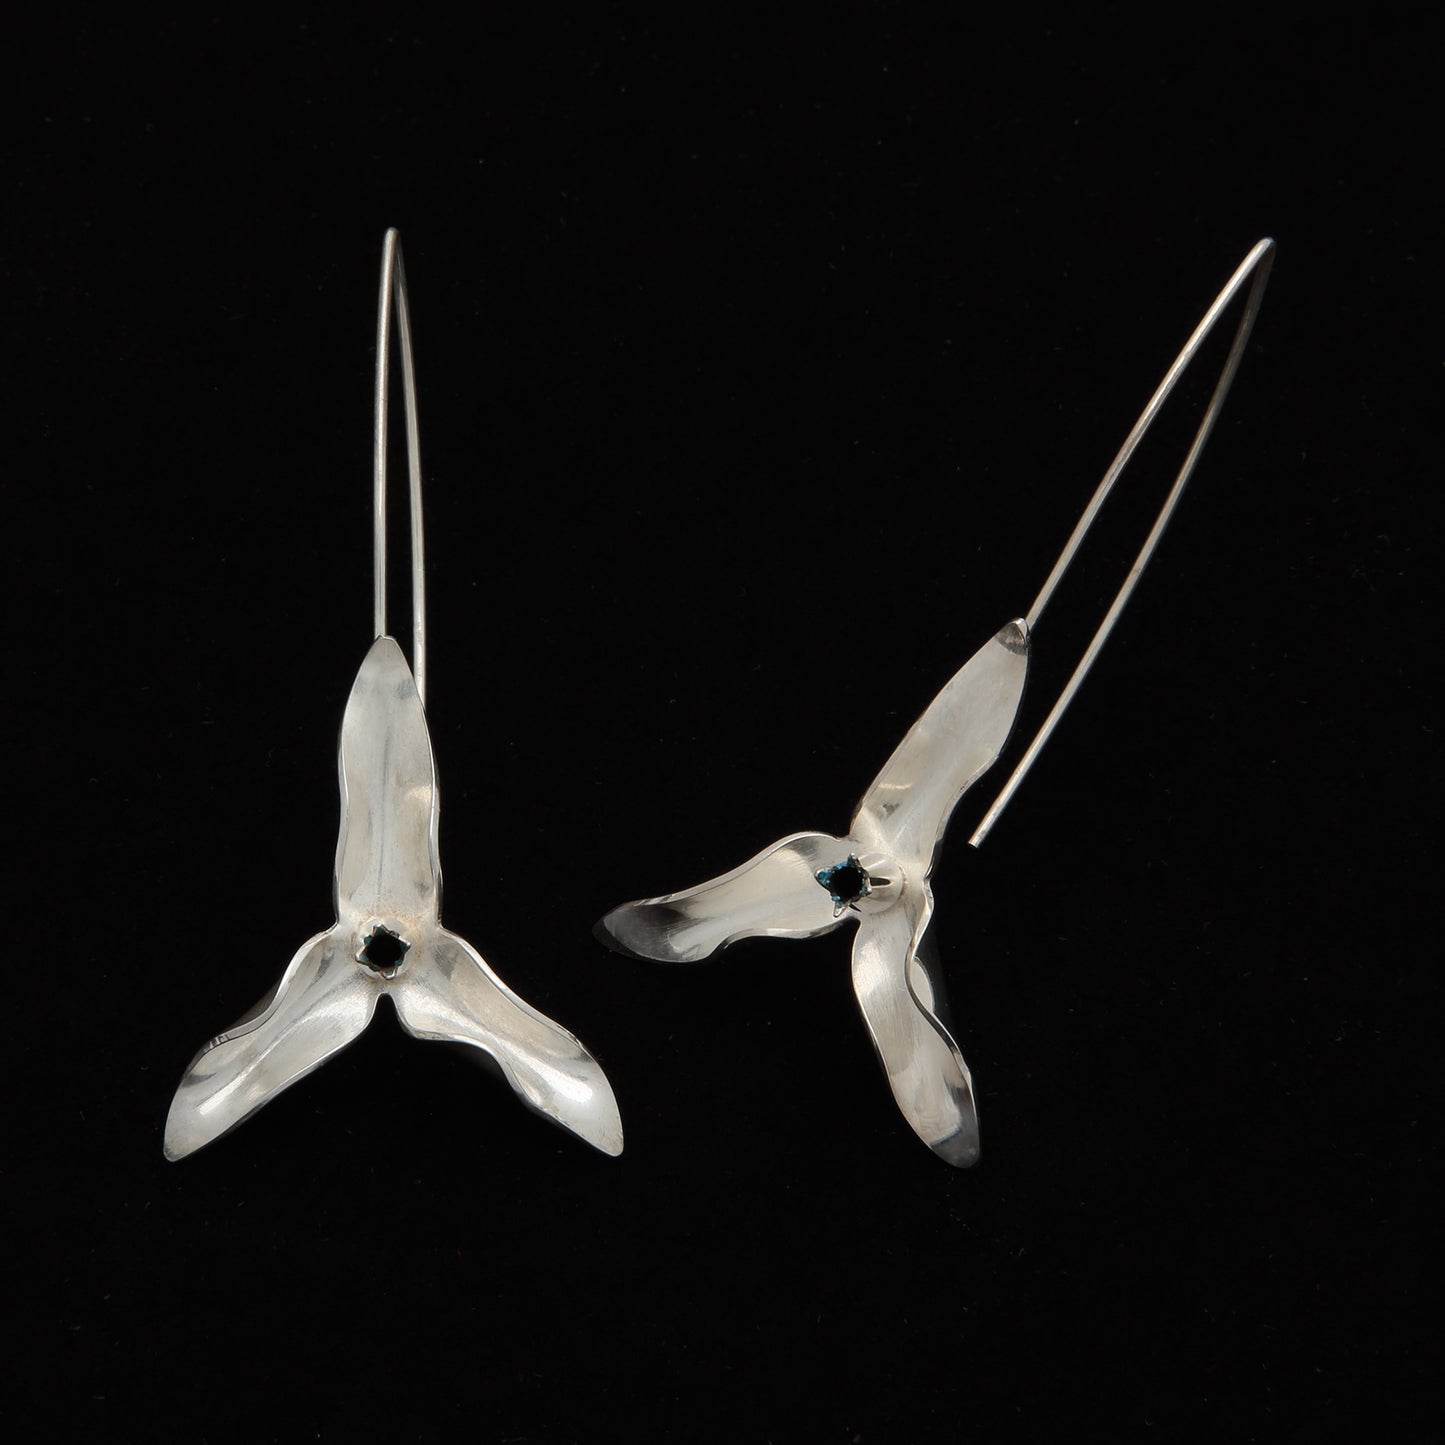 Trillium Flower earrings on wire